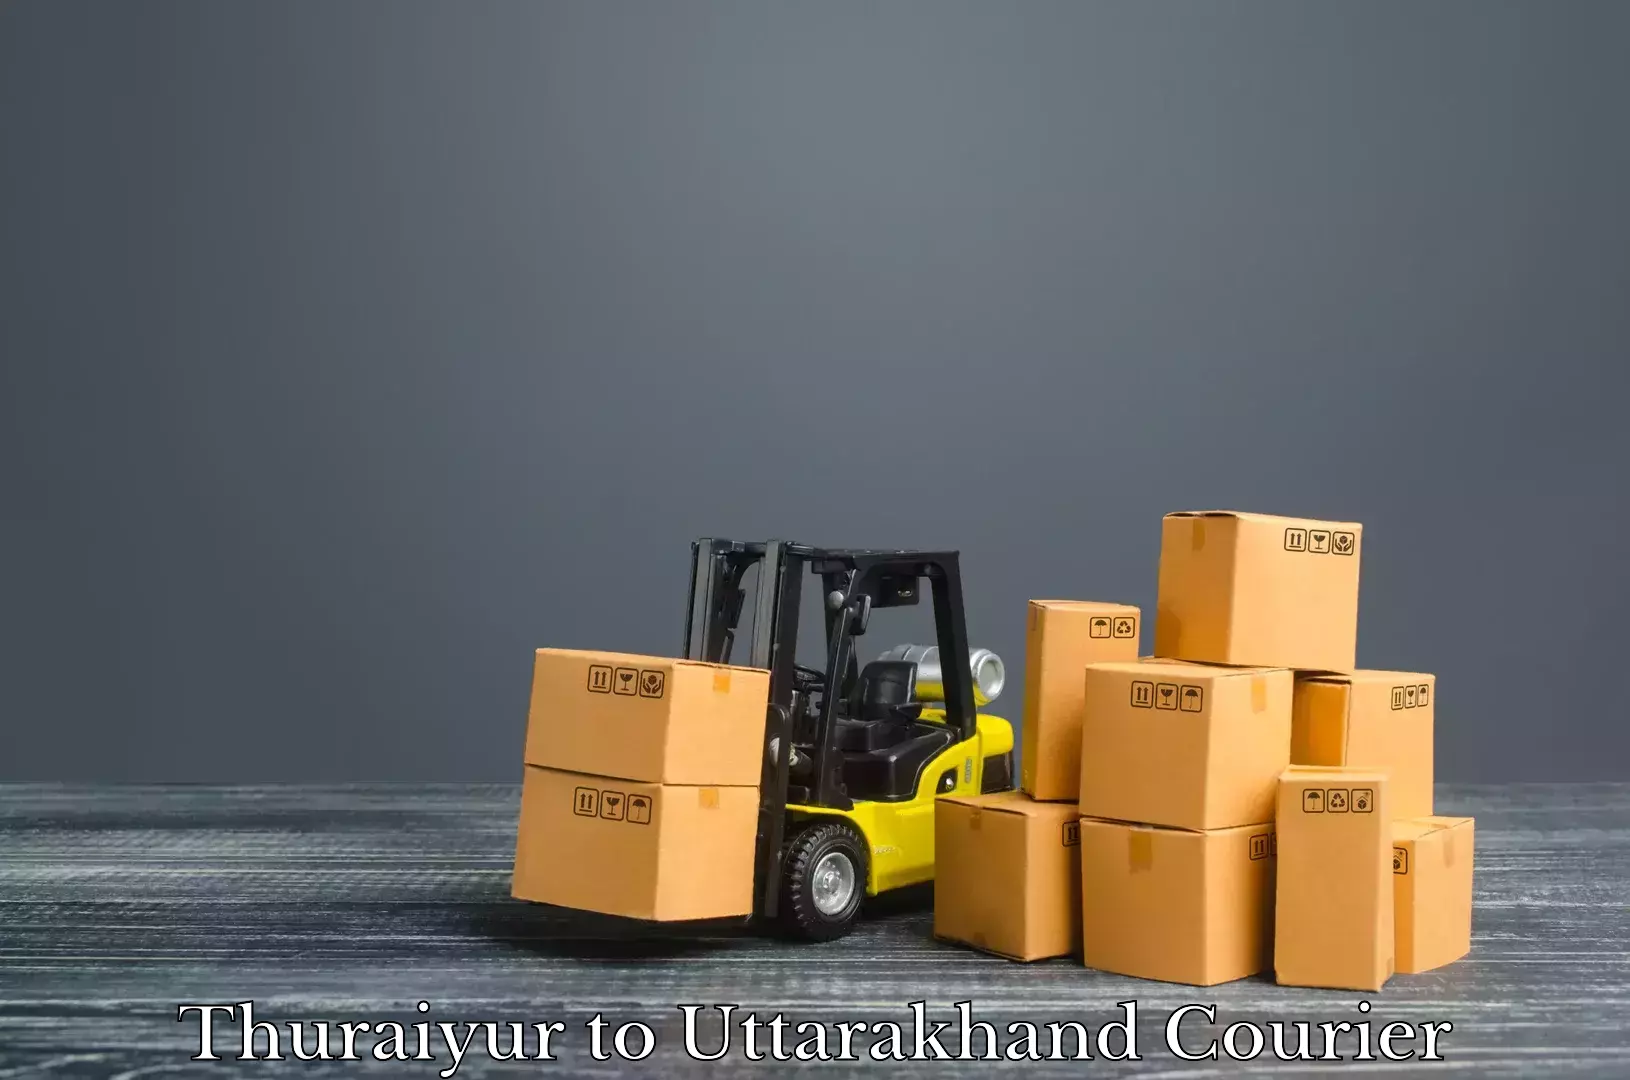 Luggage shipment strategy Thuraiyur to Uttarakhand